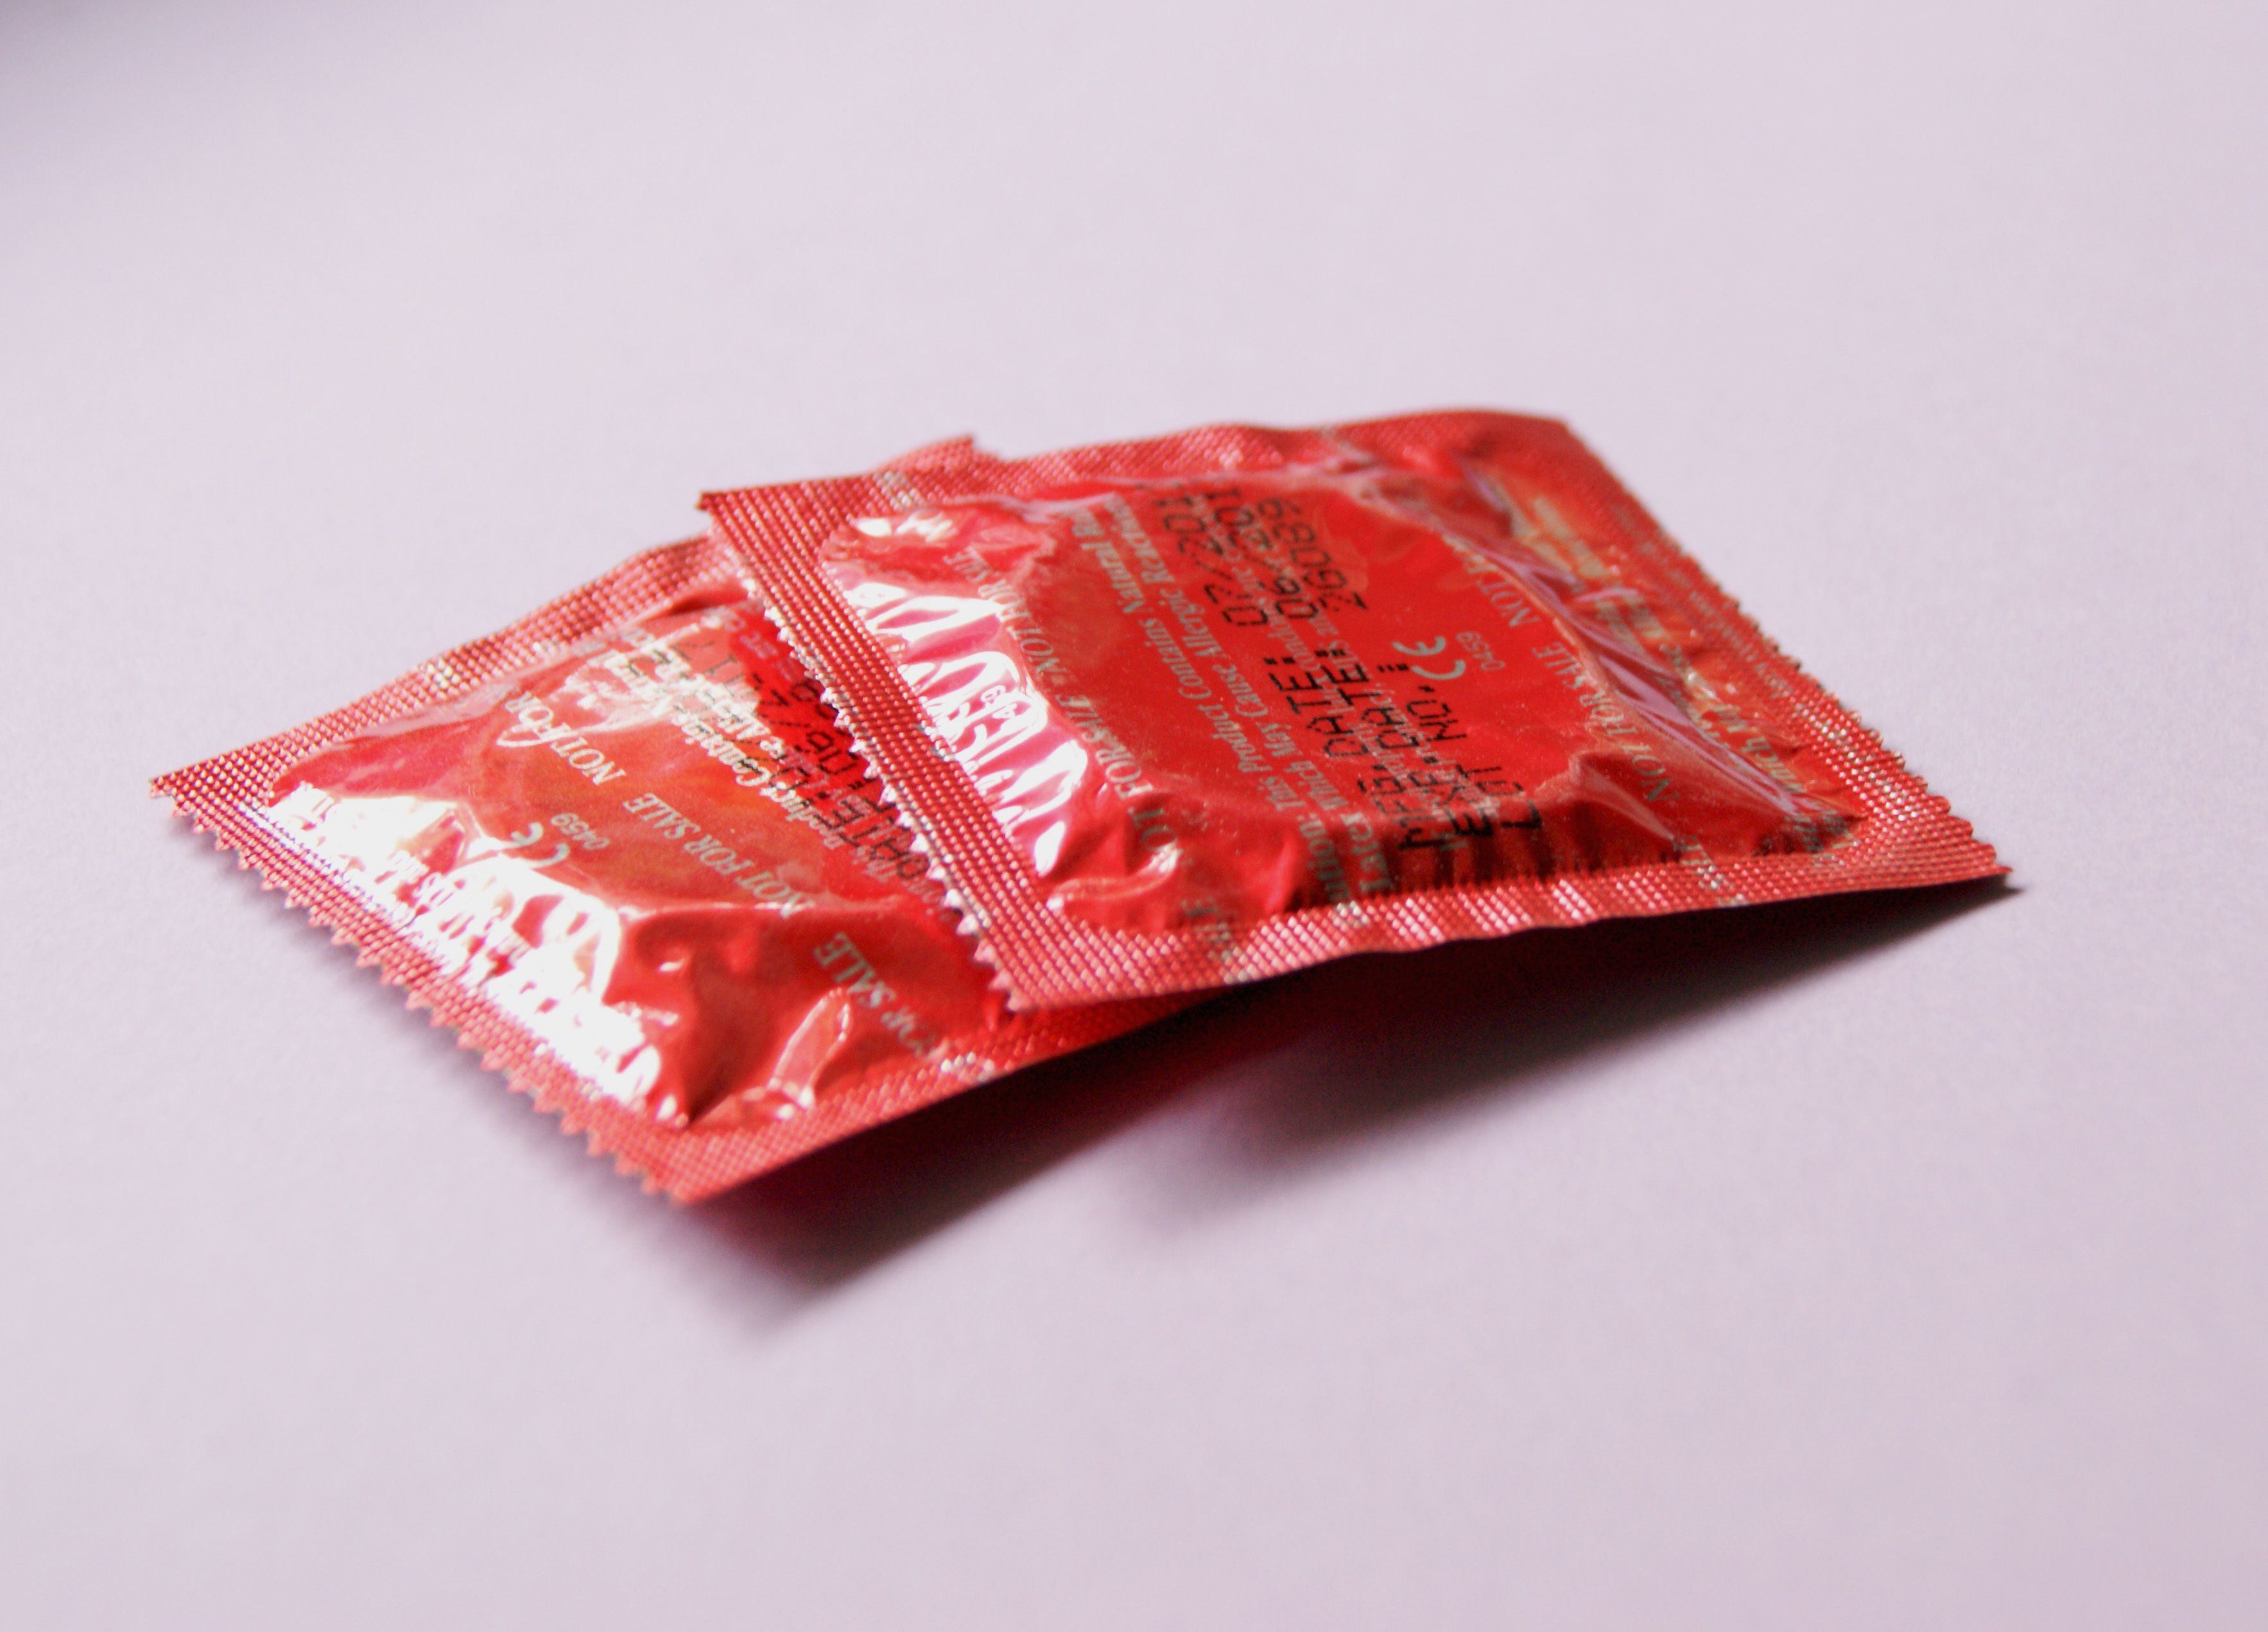 uso de anticonceptivos llevan al embarazo adolescente a la cifra más baja desde que hay registros